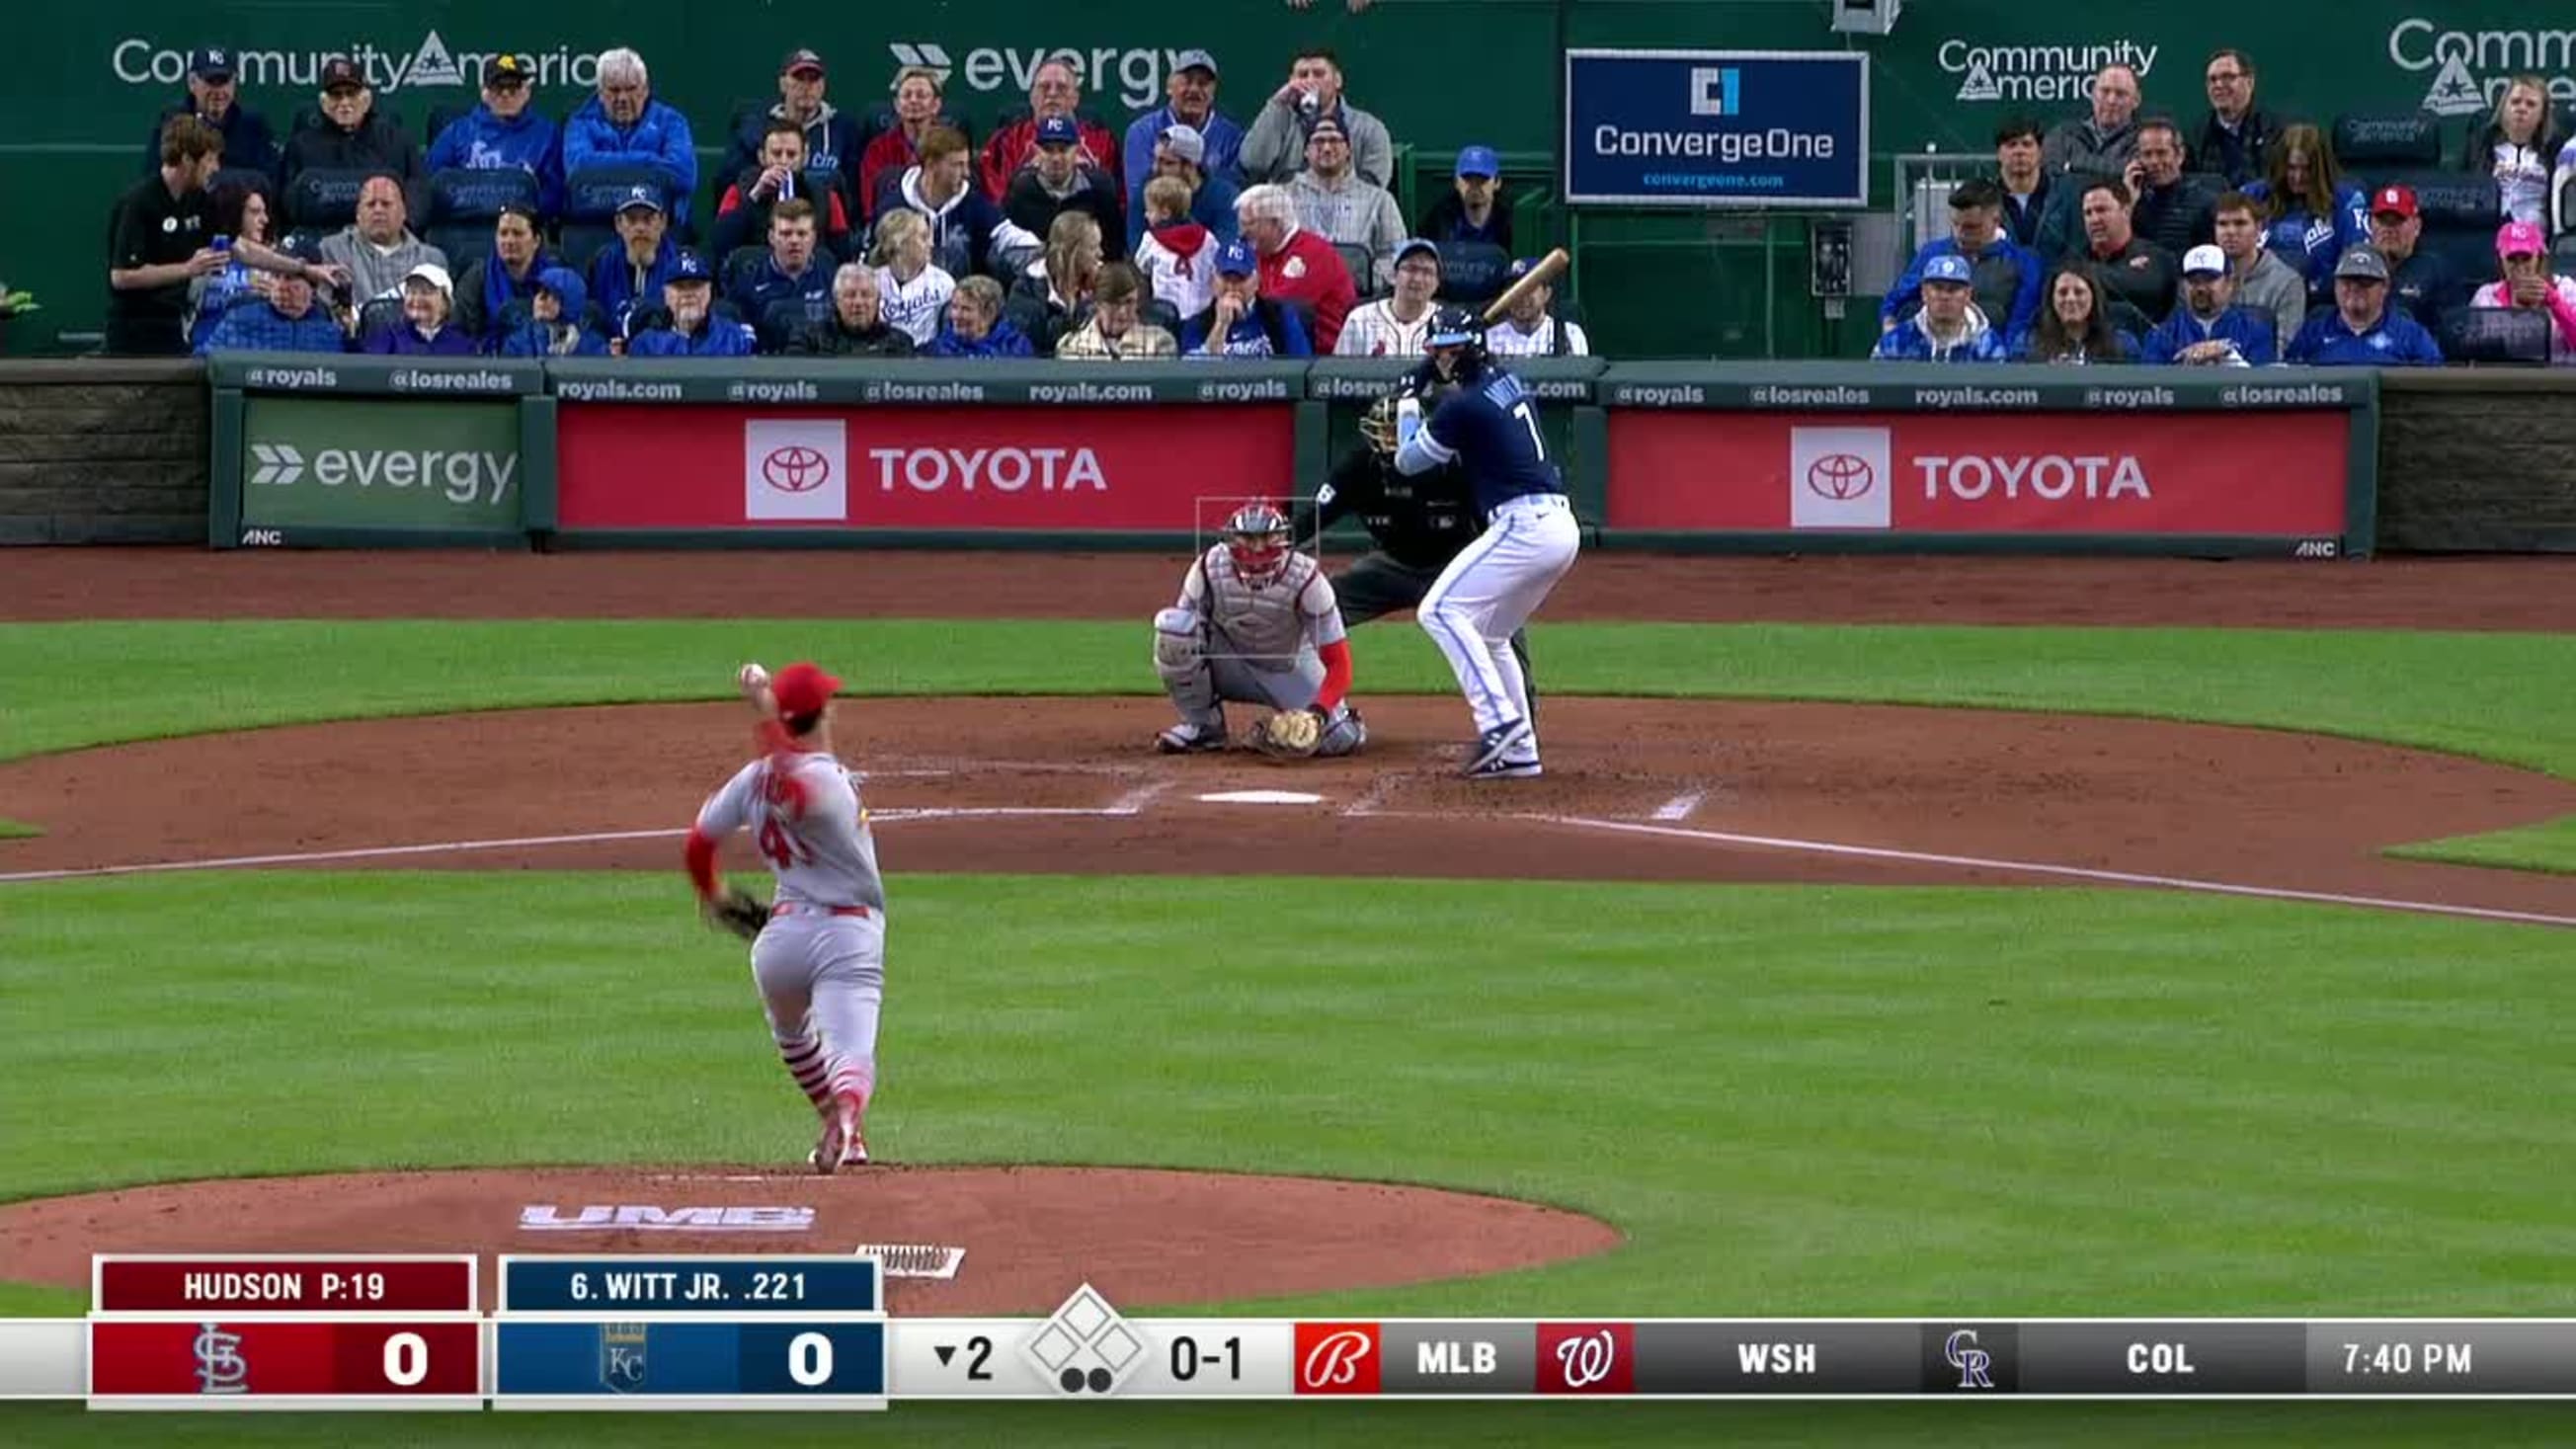 WATCH: Royals' Bobby Witt Jr. hits first career MLB home run at